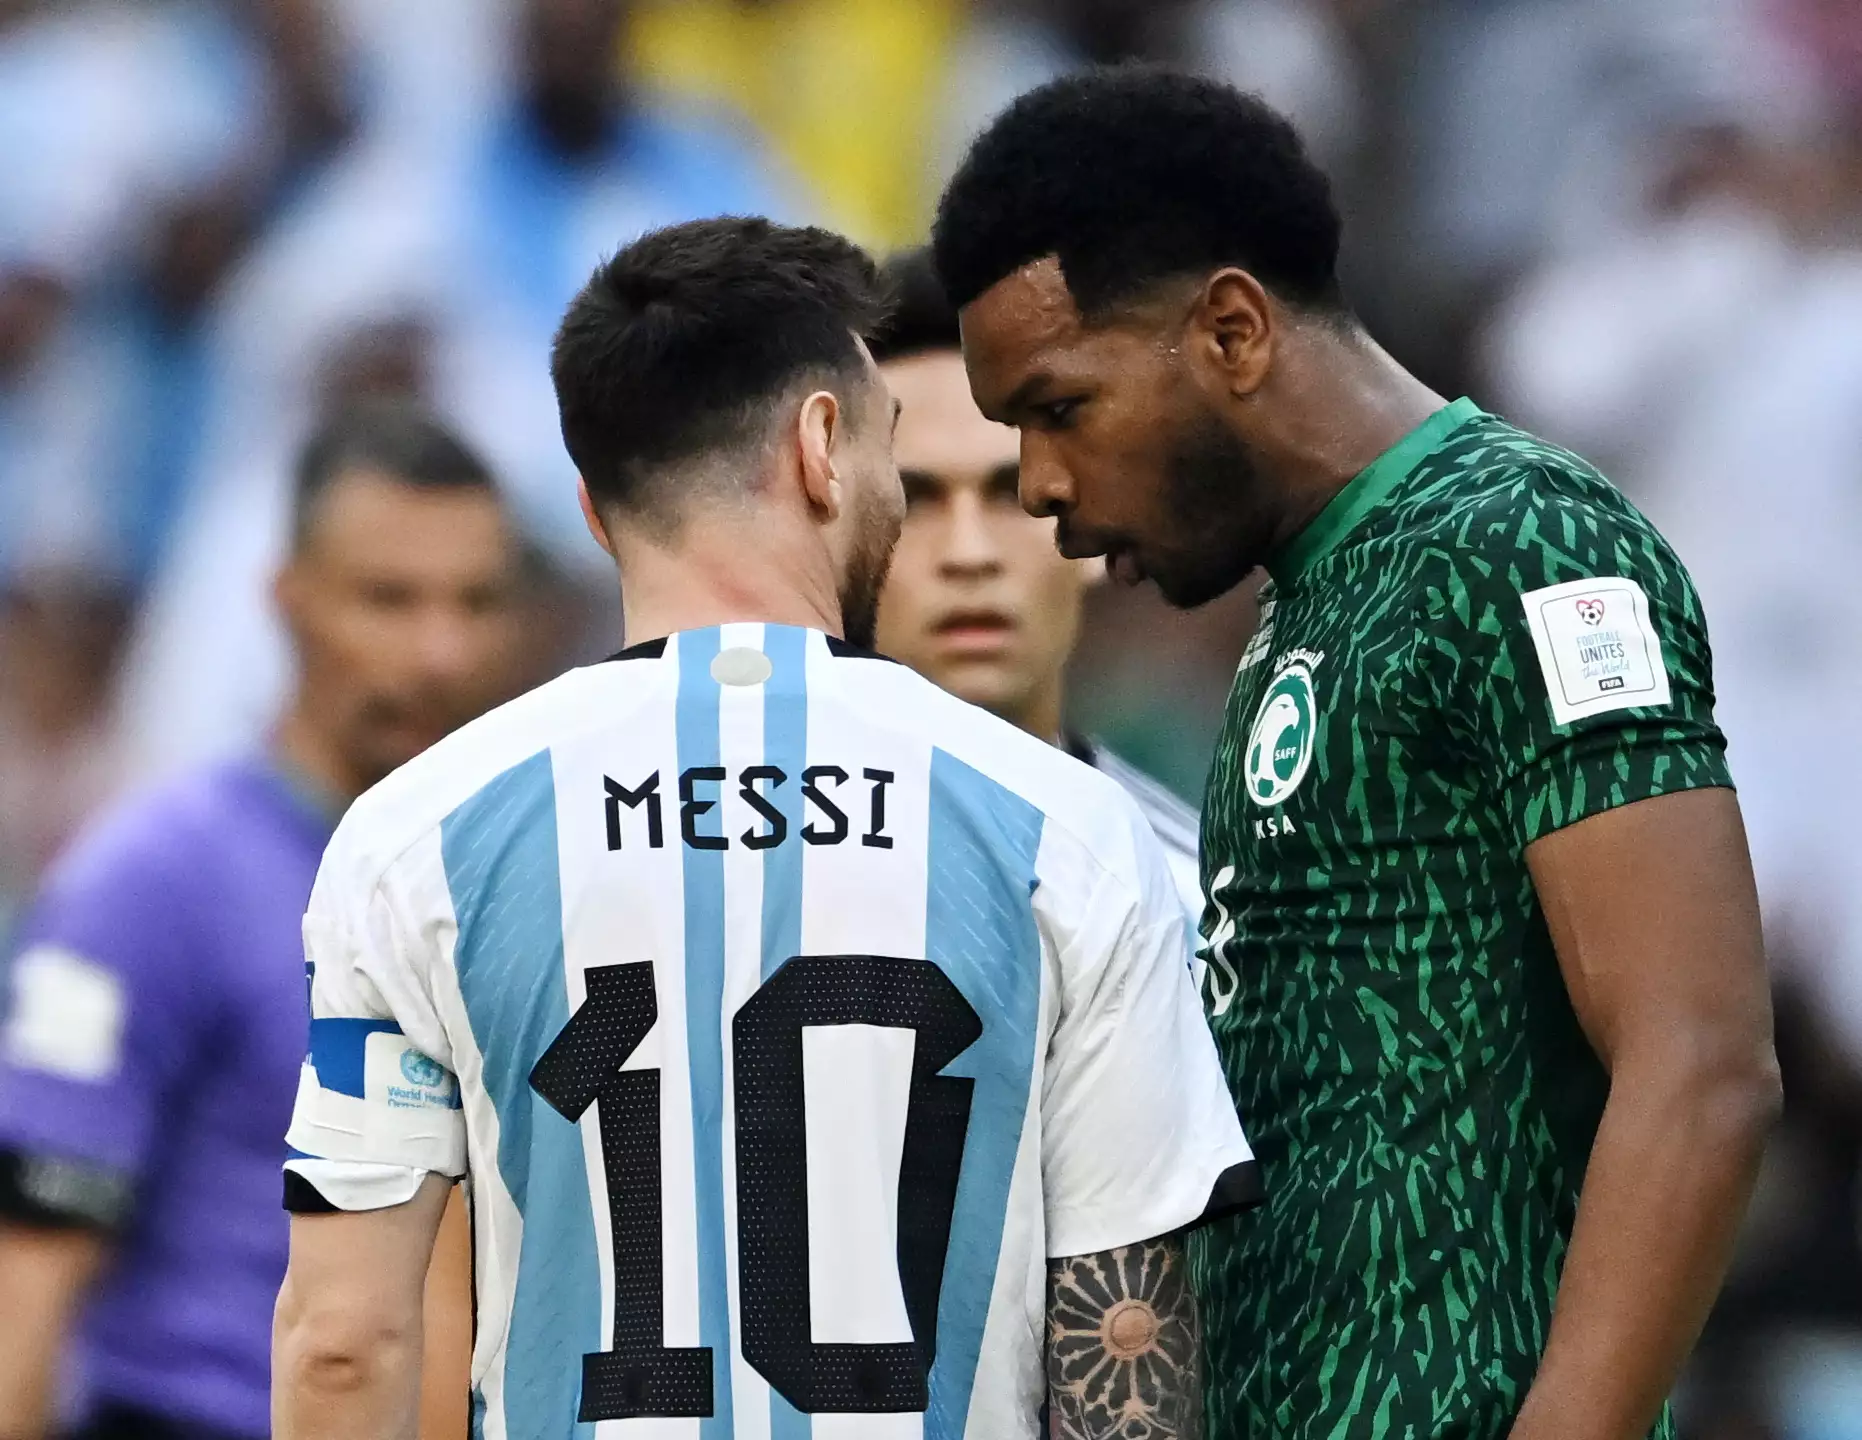 Μουντιάλ 2022: Αργεντινή – Σαουδική Αραβία 1-2: Κακή αρχή για την ομάδα του Λ.Μέσι